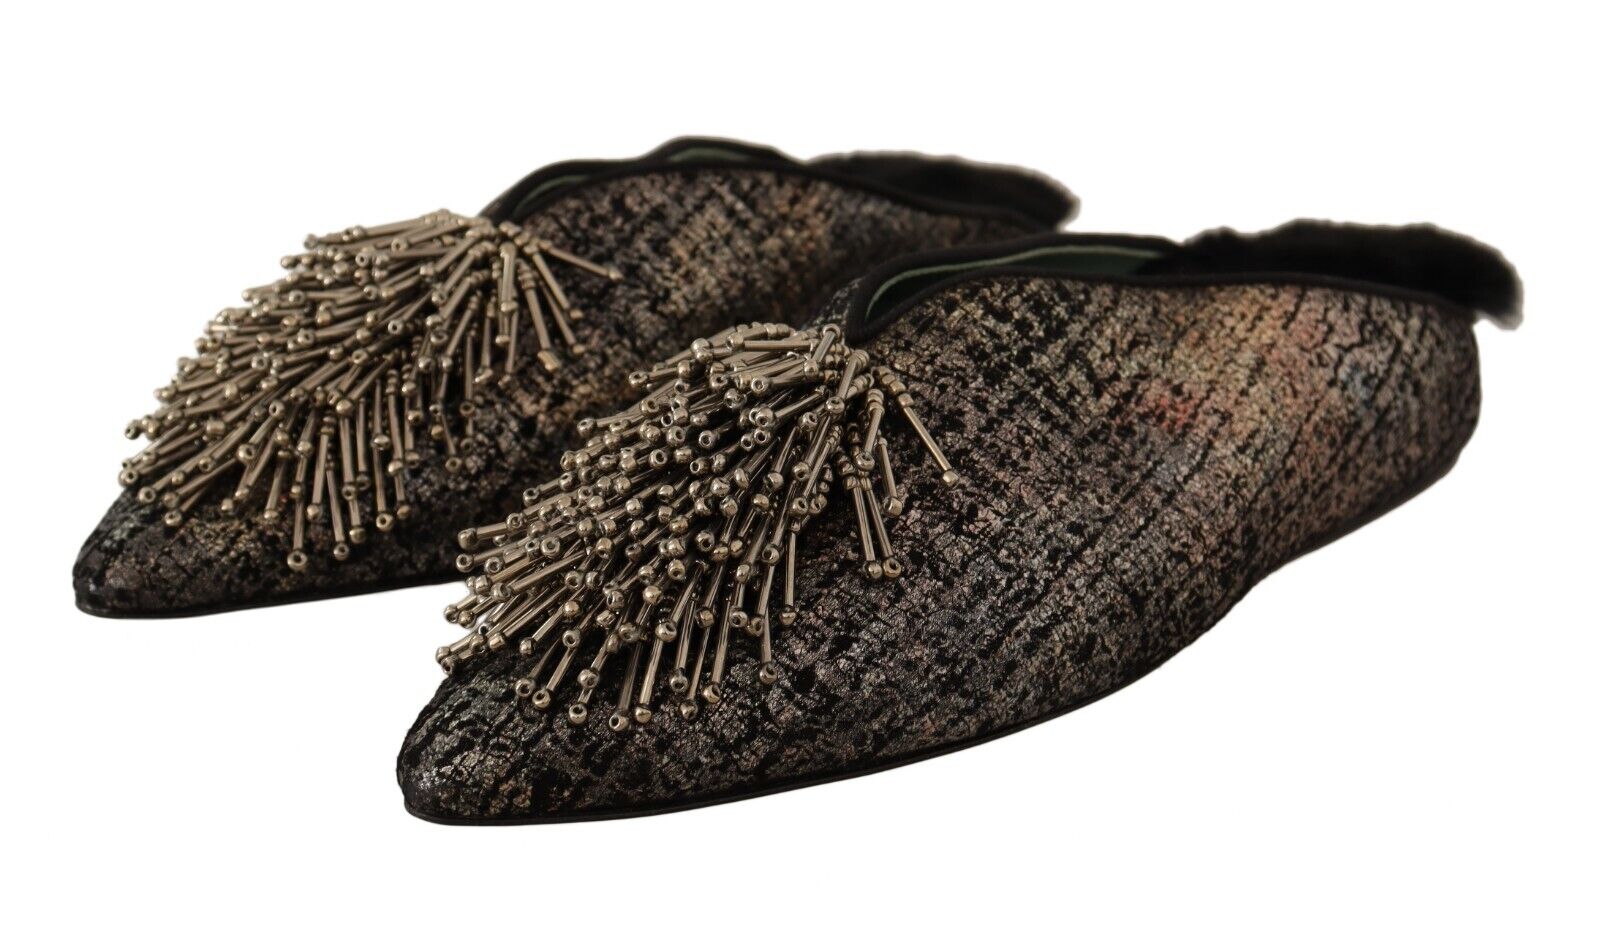 Paola D'Arcano Gold Jacquard Leather Embellished Slip On Shoes - Fizigo